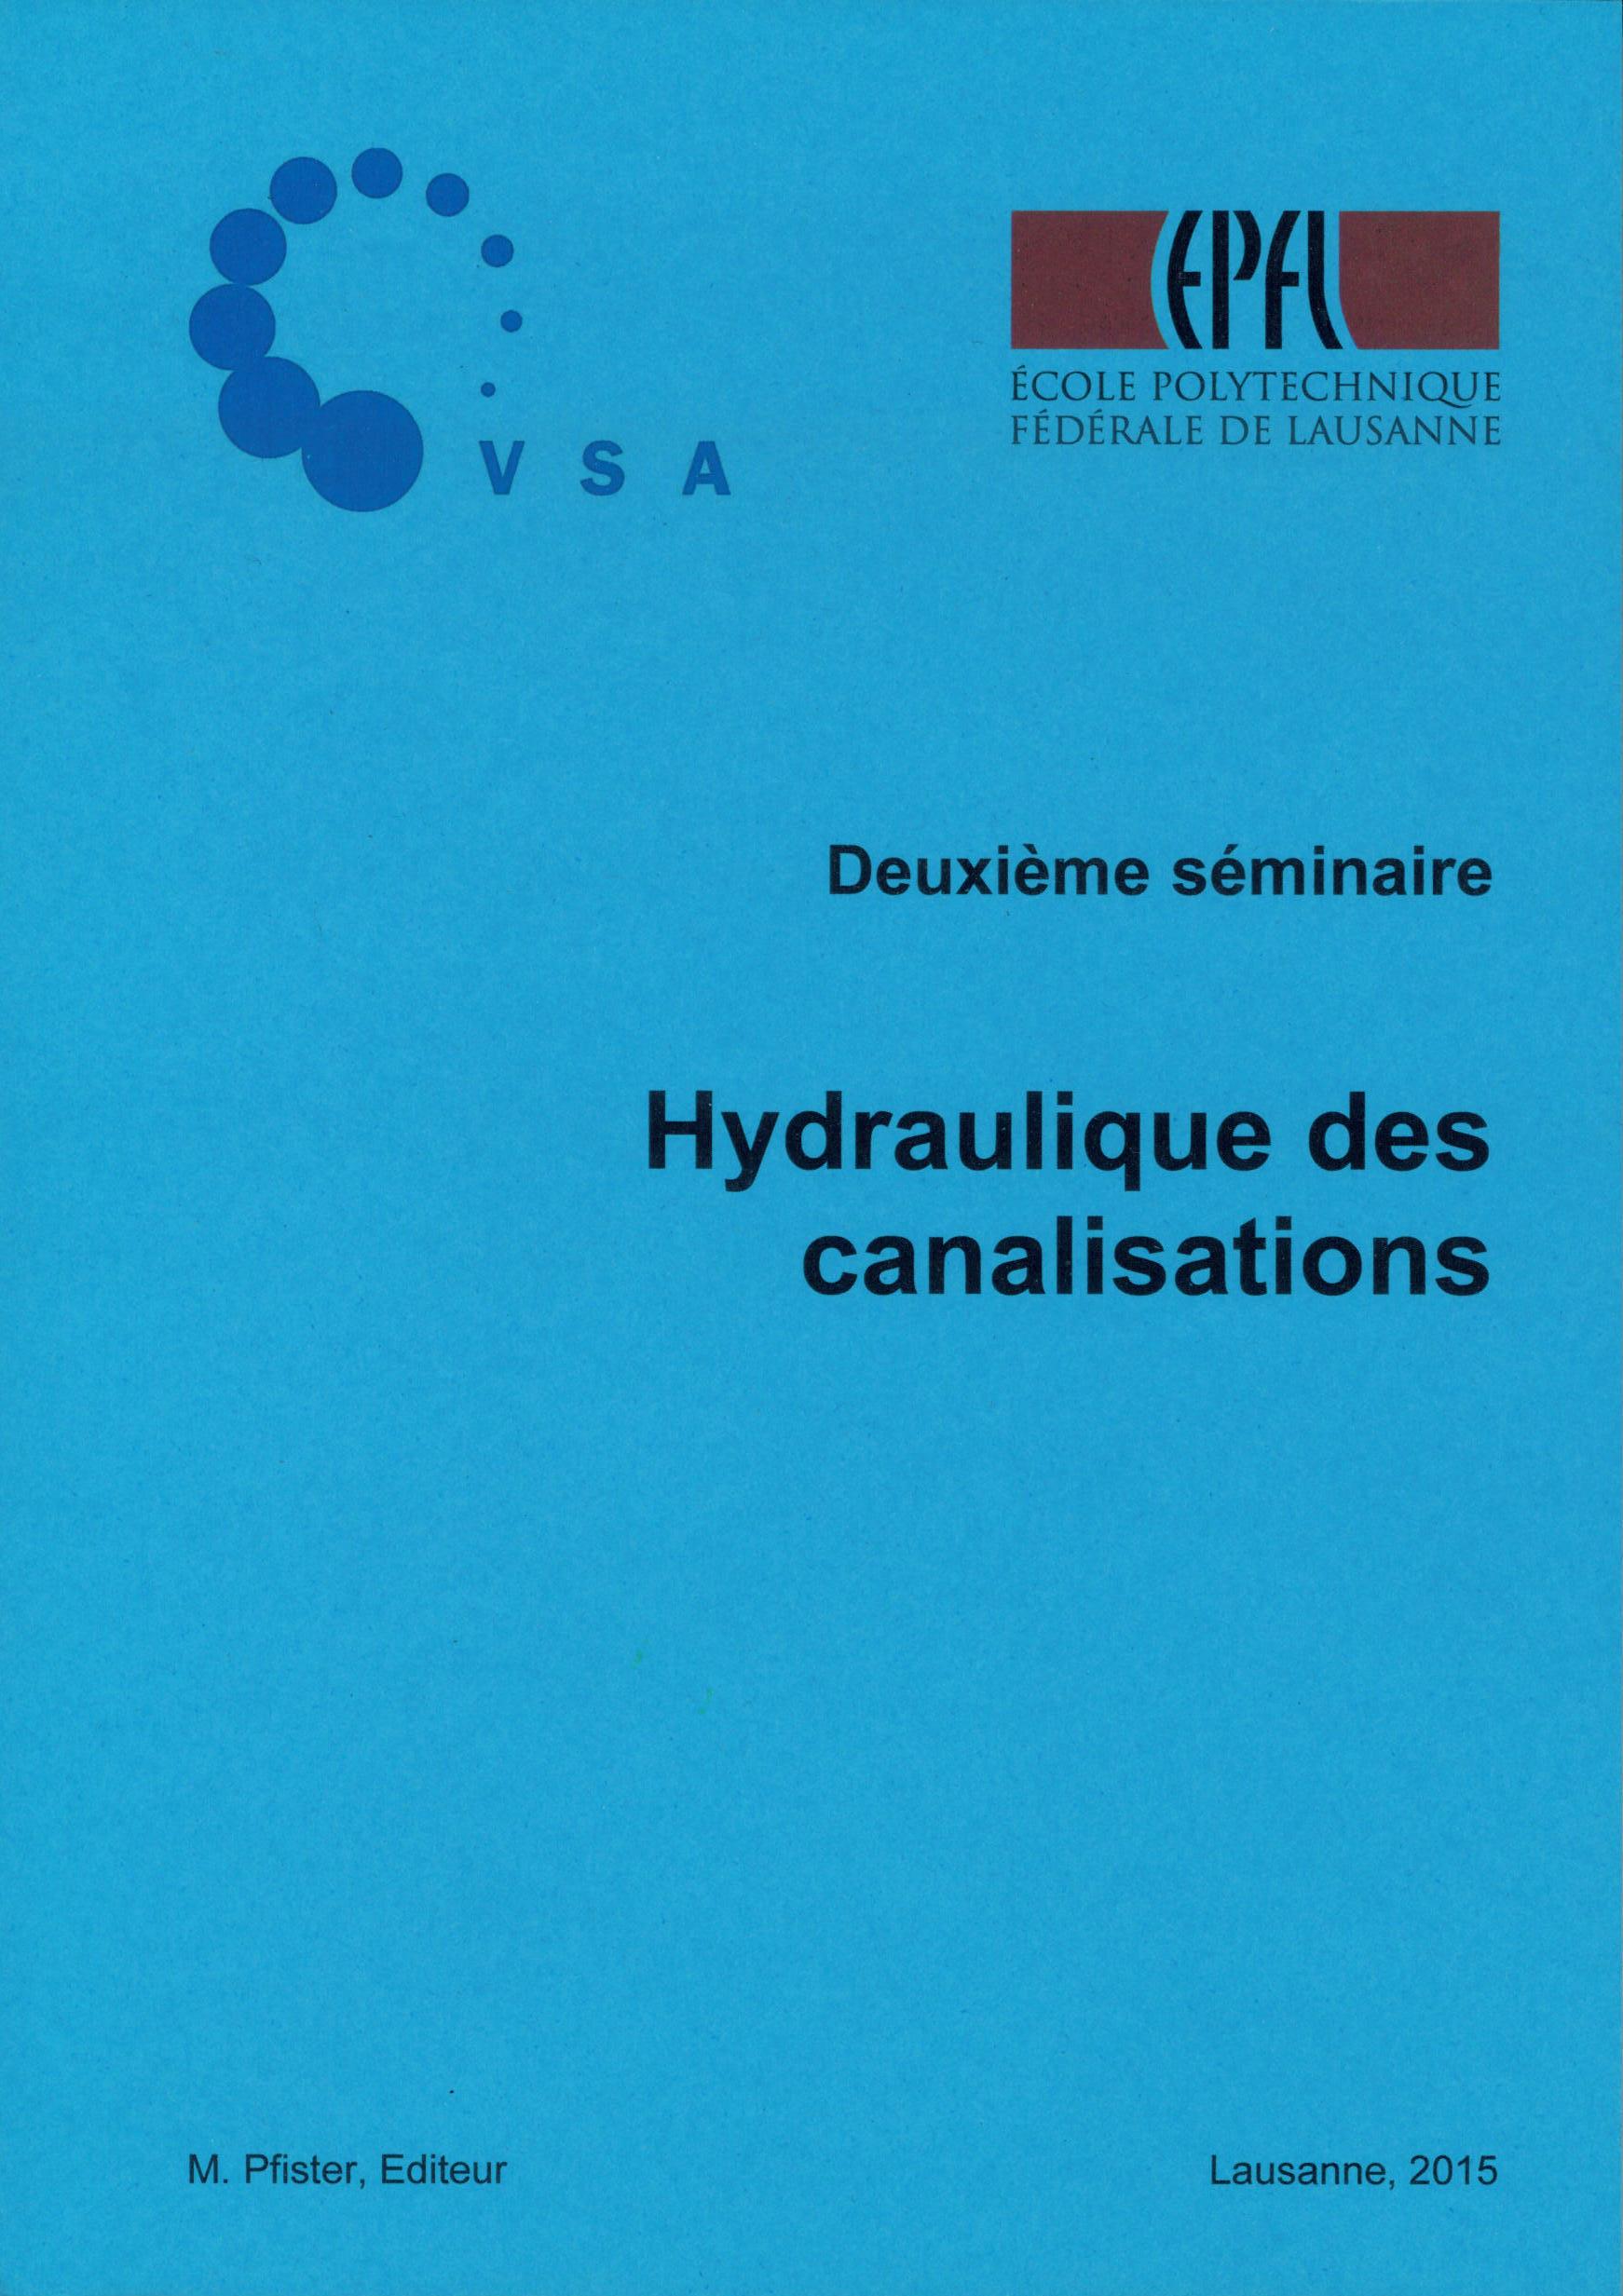 Hydraulique des canalisations – Deuxième séminaire (2015)